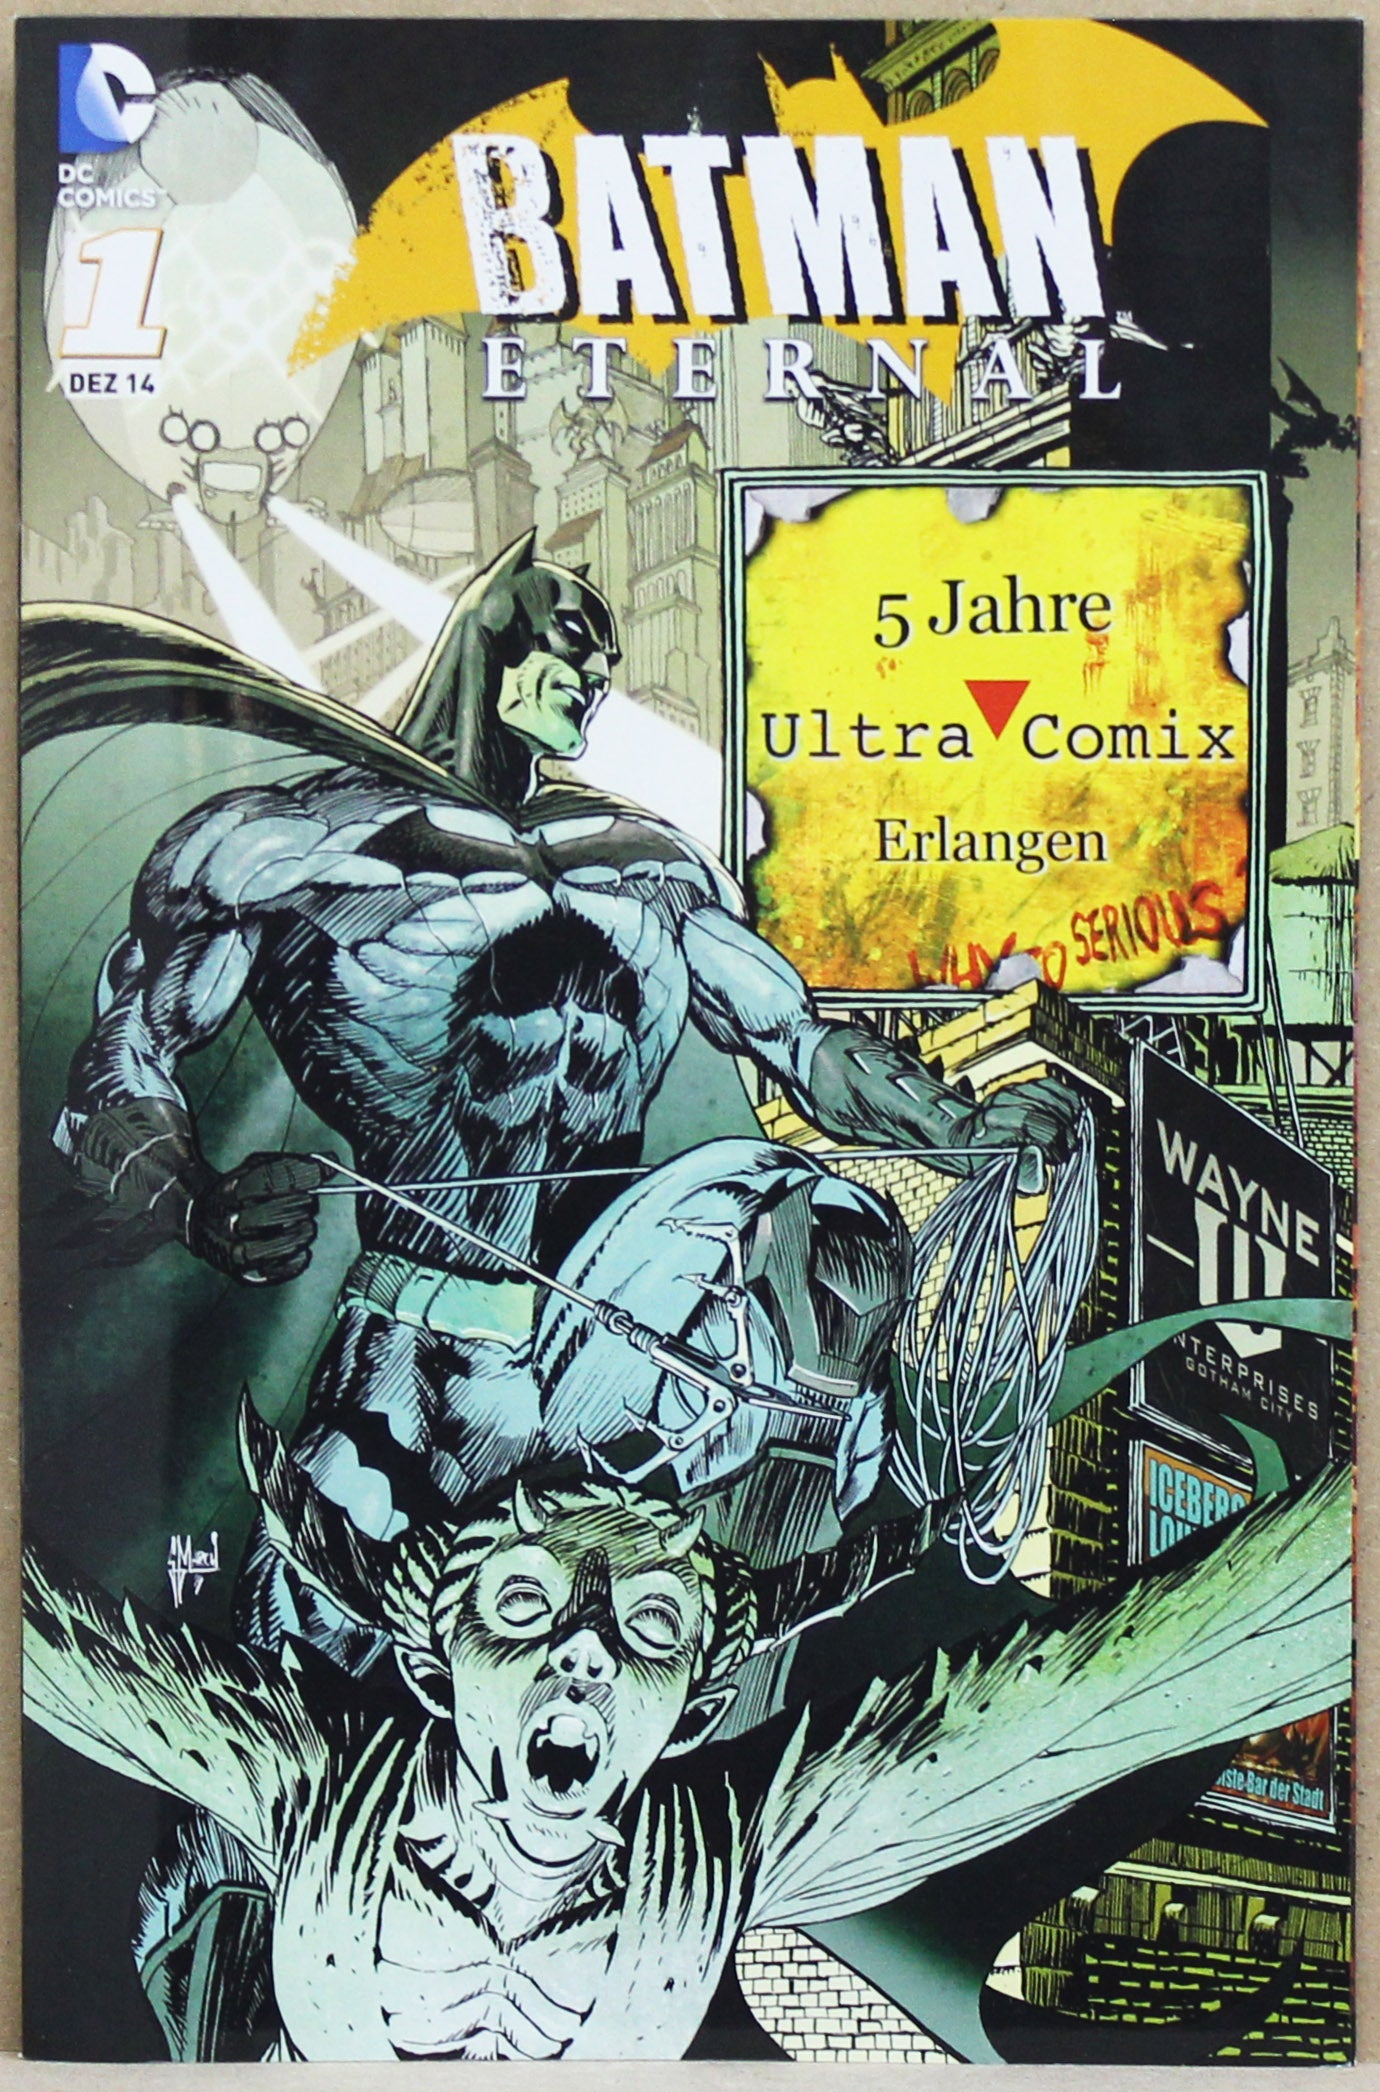 Batman Eternal 1 Ultra Comix Erlangen